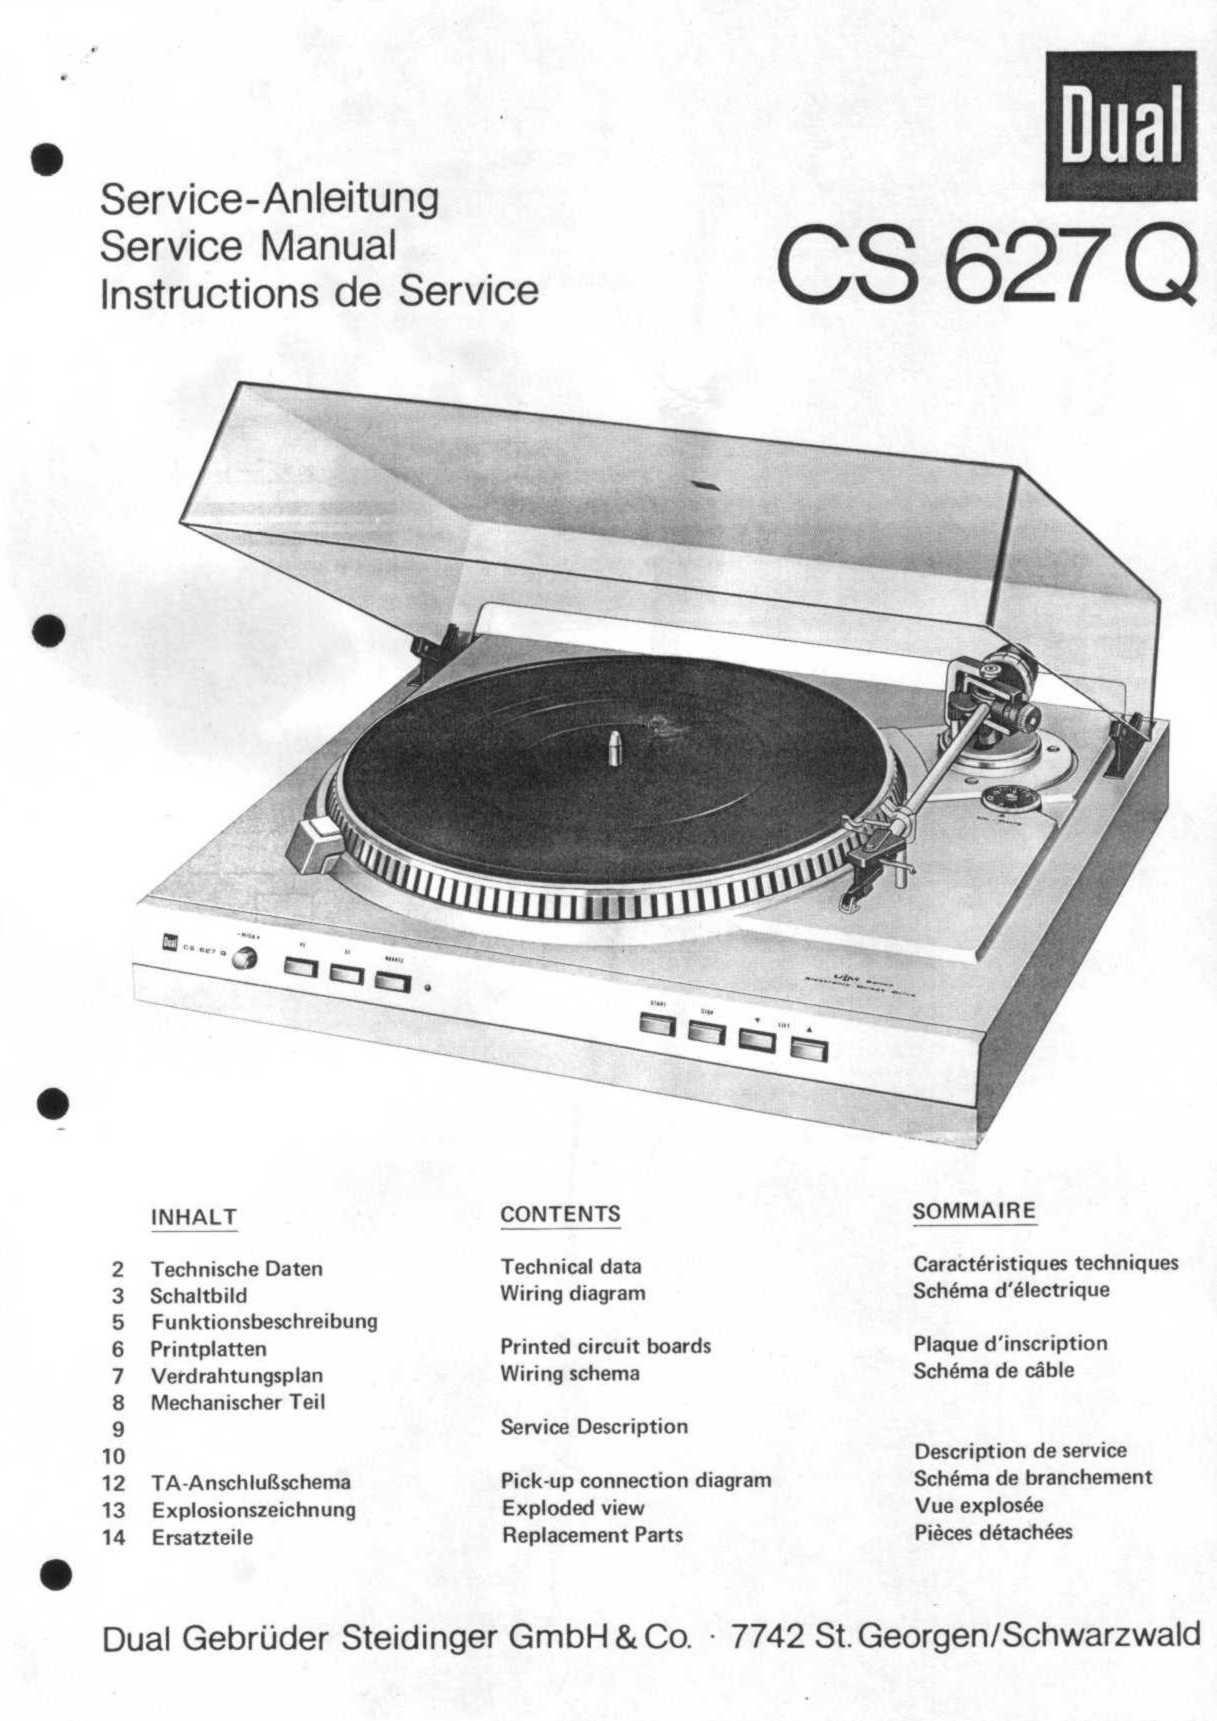 Service Manual-Anleitung für Dual CS 607 CS 617 Q 